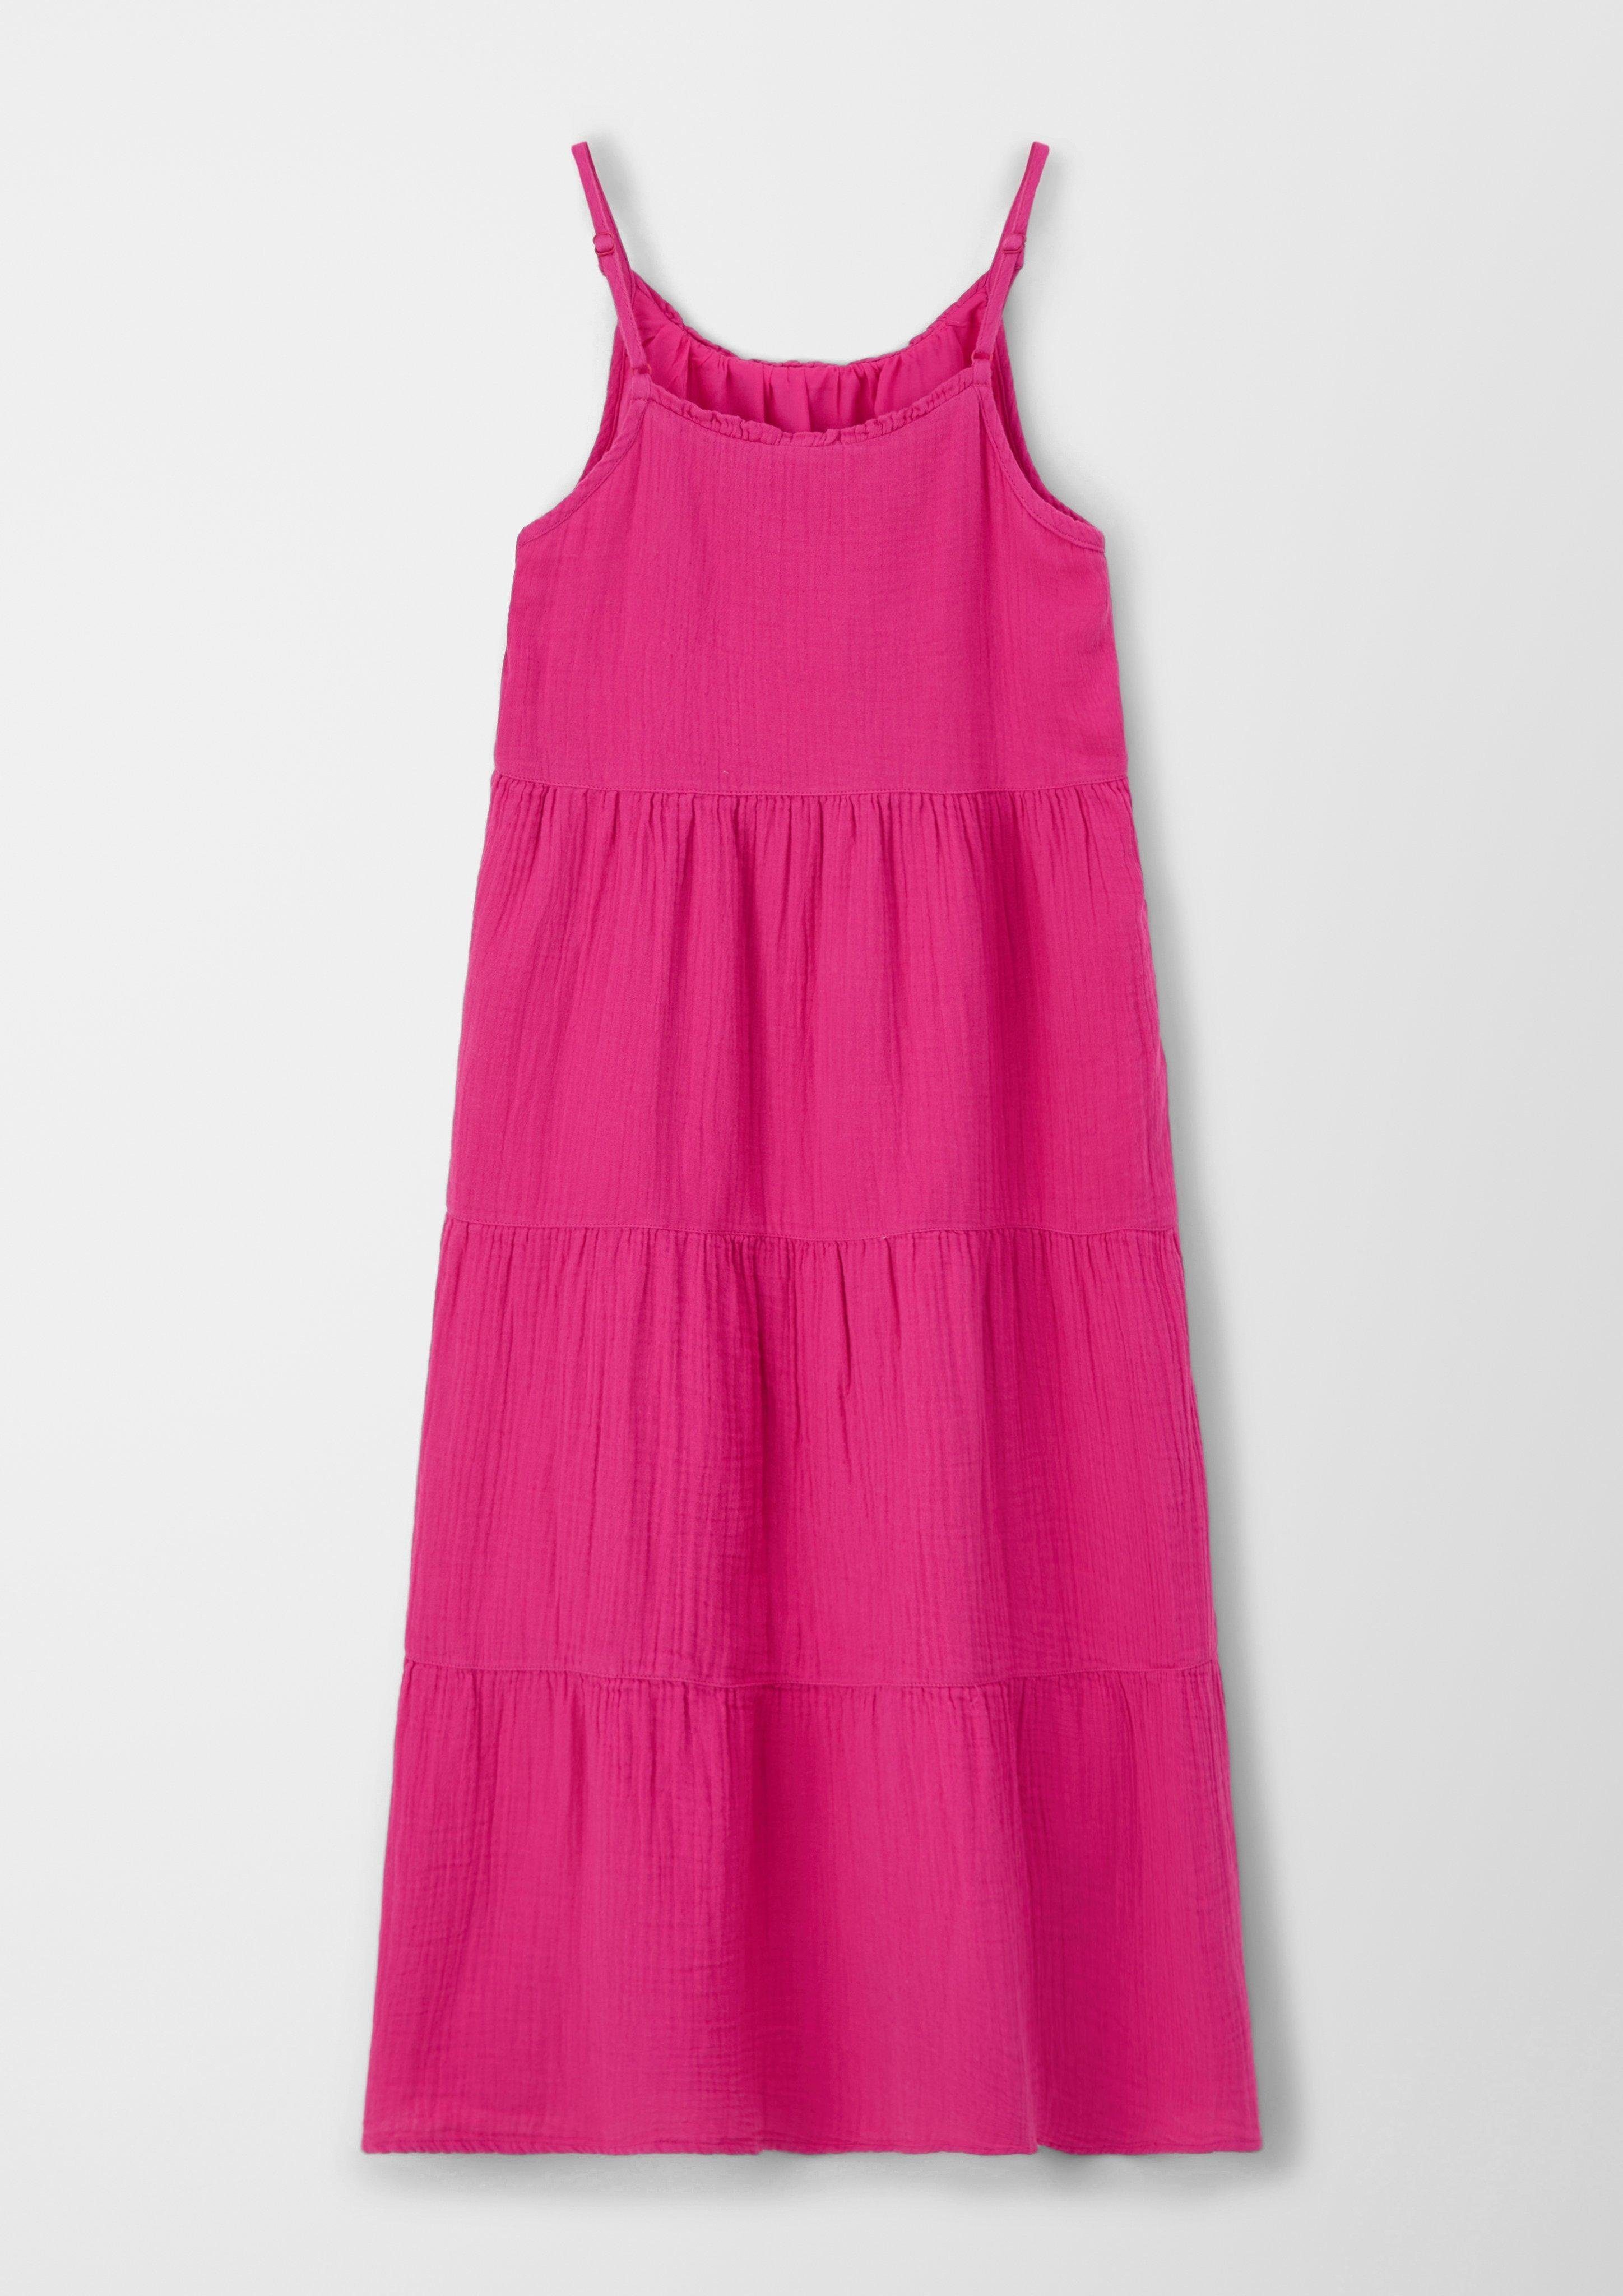 Stufendesign im Maxikleid Kleid pink s.Oliver Volants Raffung,